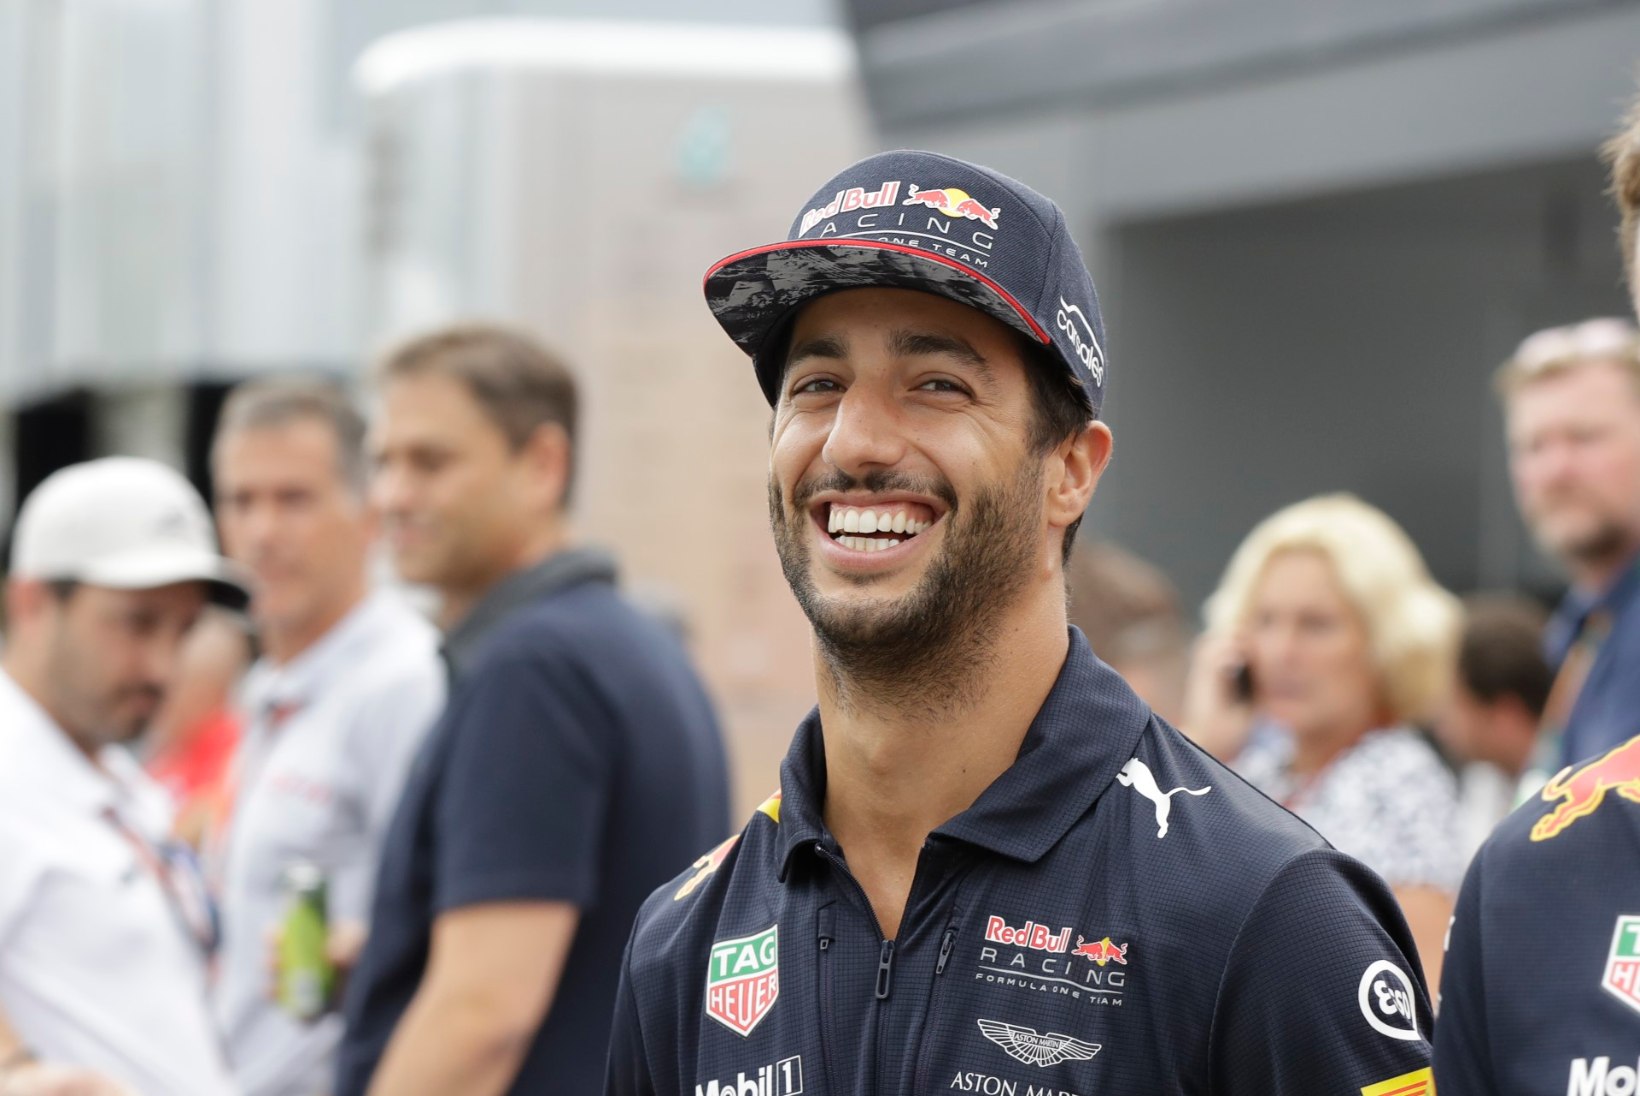 Red Bulli Ricciardo: oleks mul sama hea vormel kui Mercedesel või Ferraril, võitleksin MM-tiitli nimel